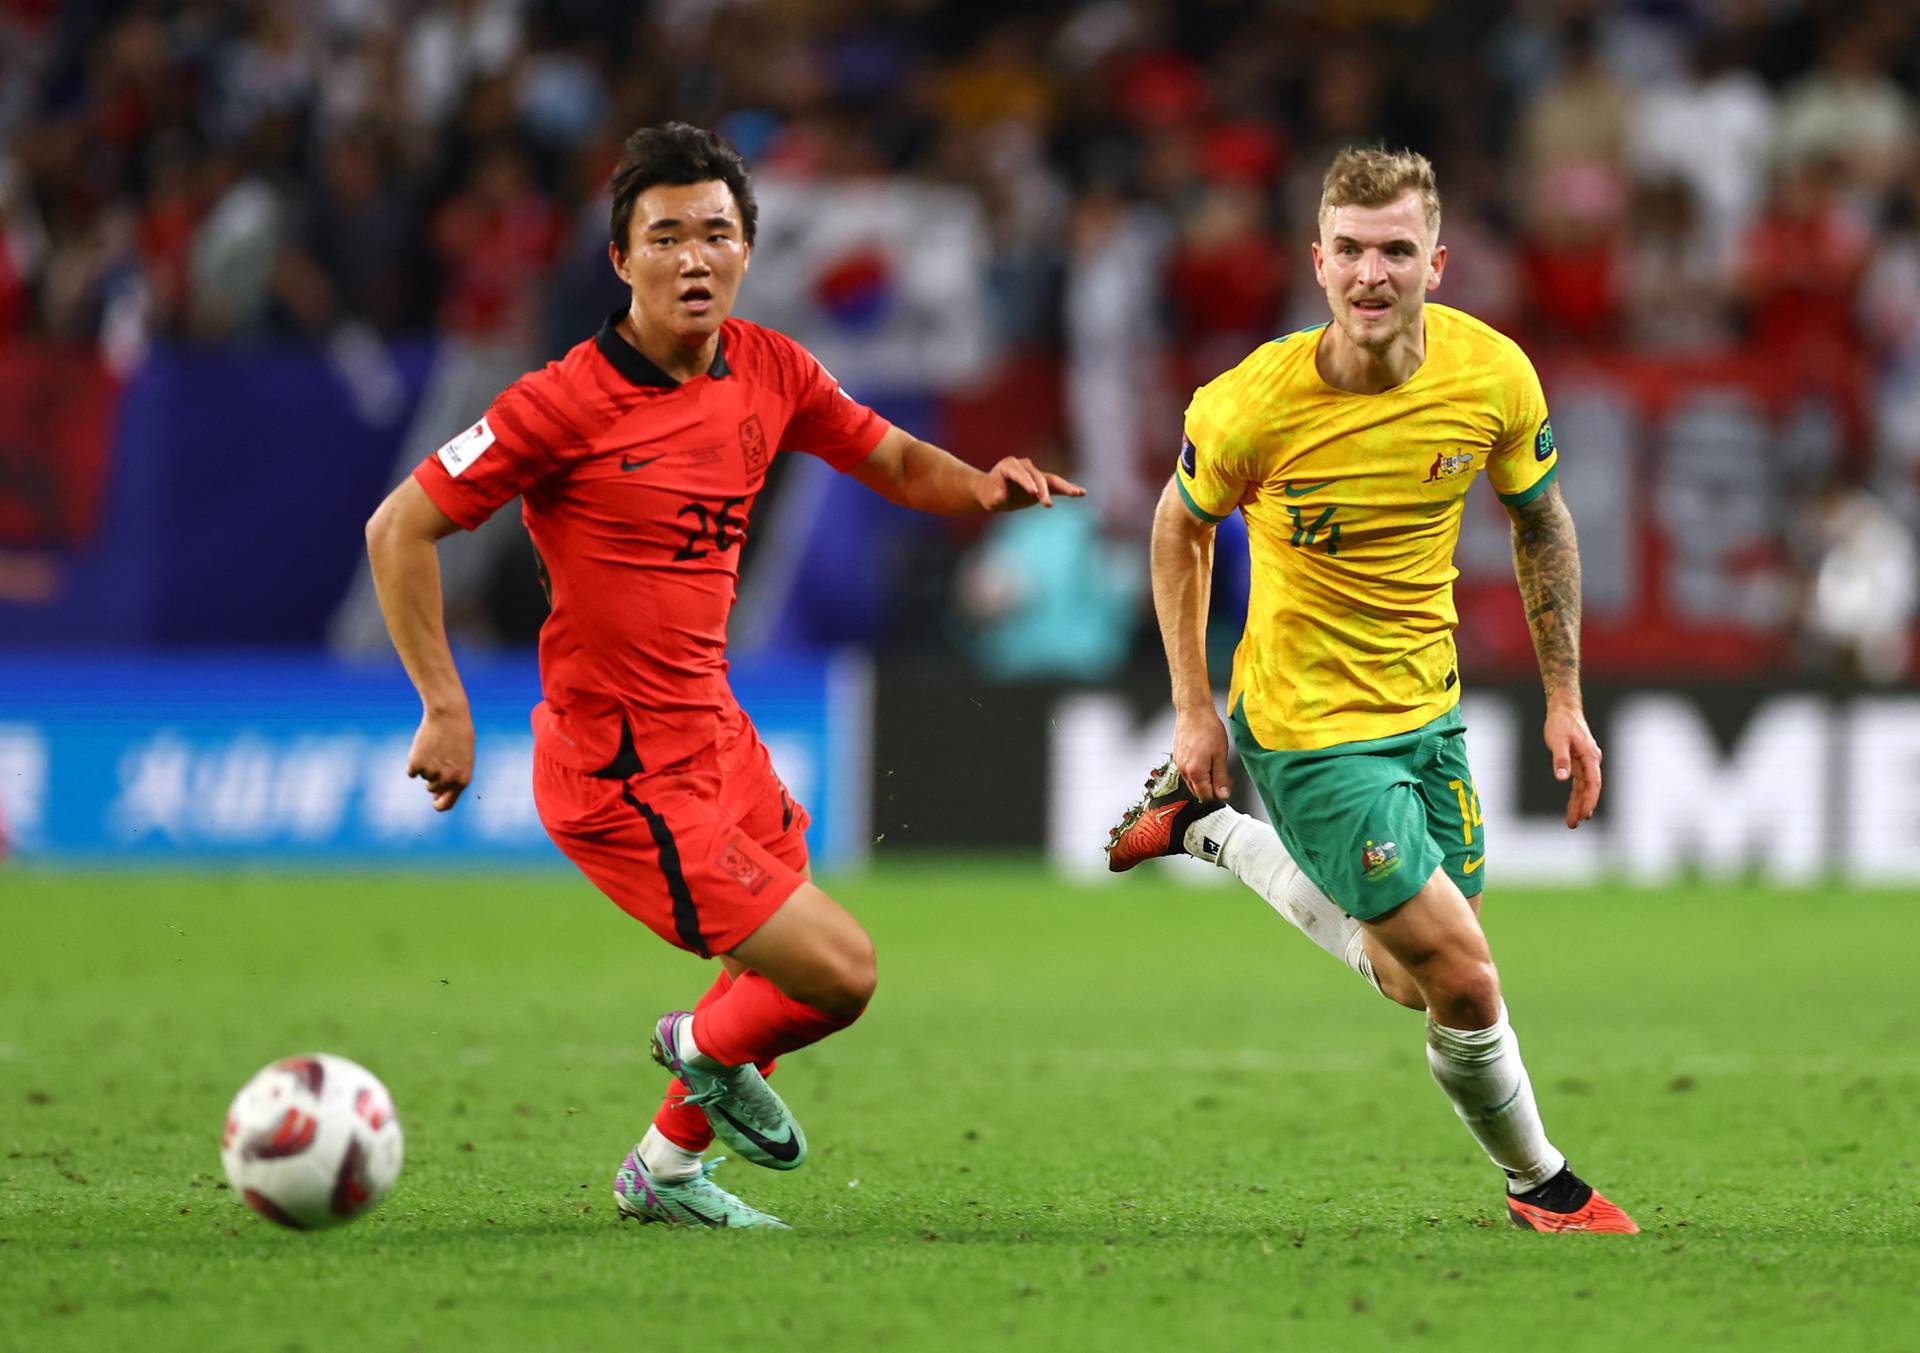 AFC Asian Cup - Quarter Final - Australia v South Korea